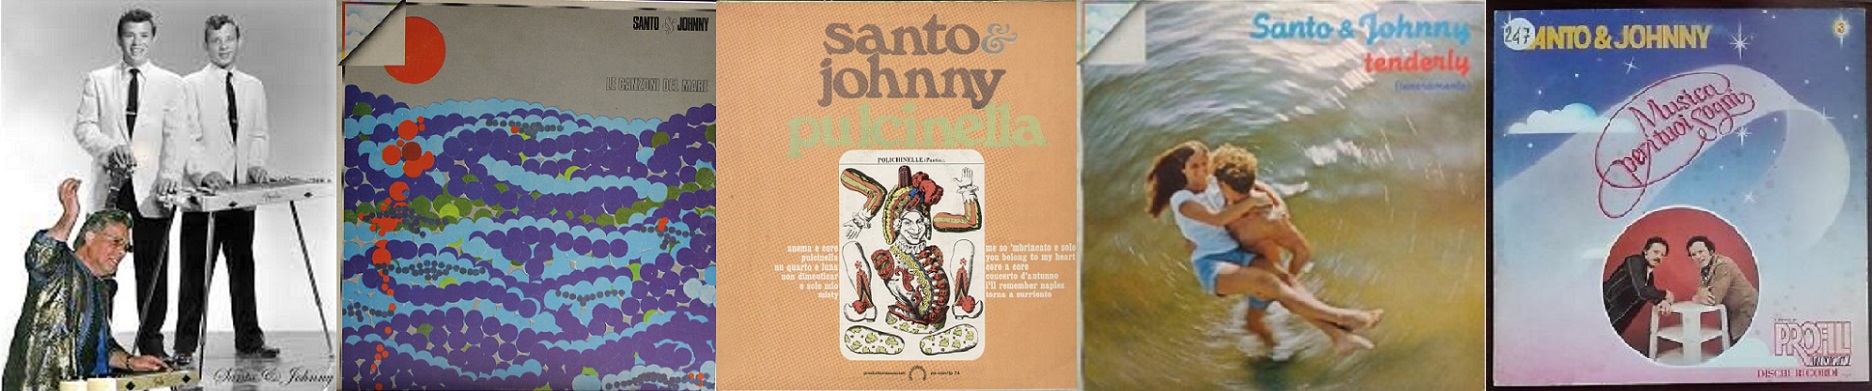 Santo&Johnny e le  cover delle colonne sonore dei film di 007.  